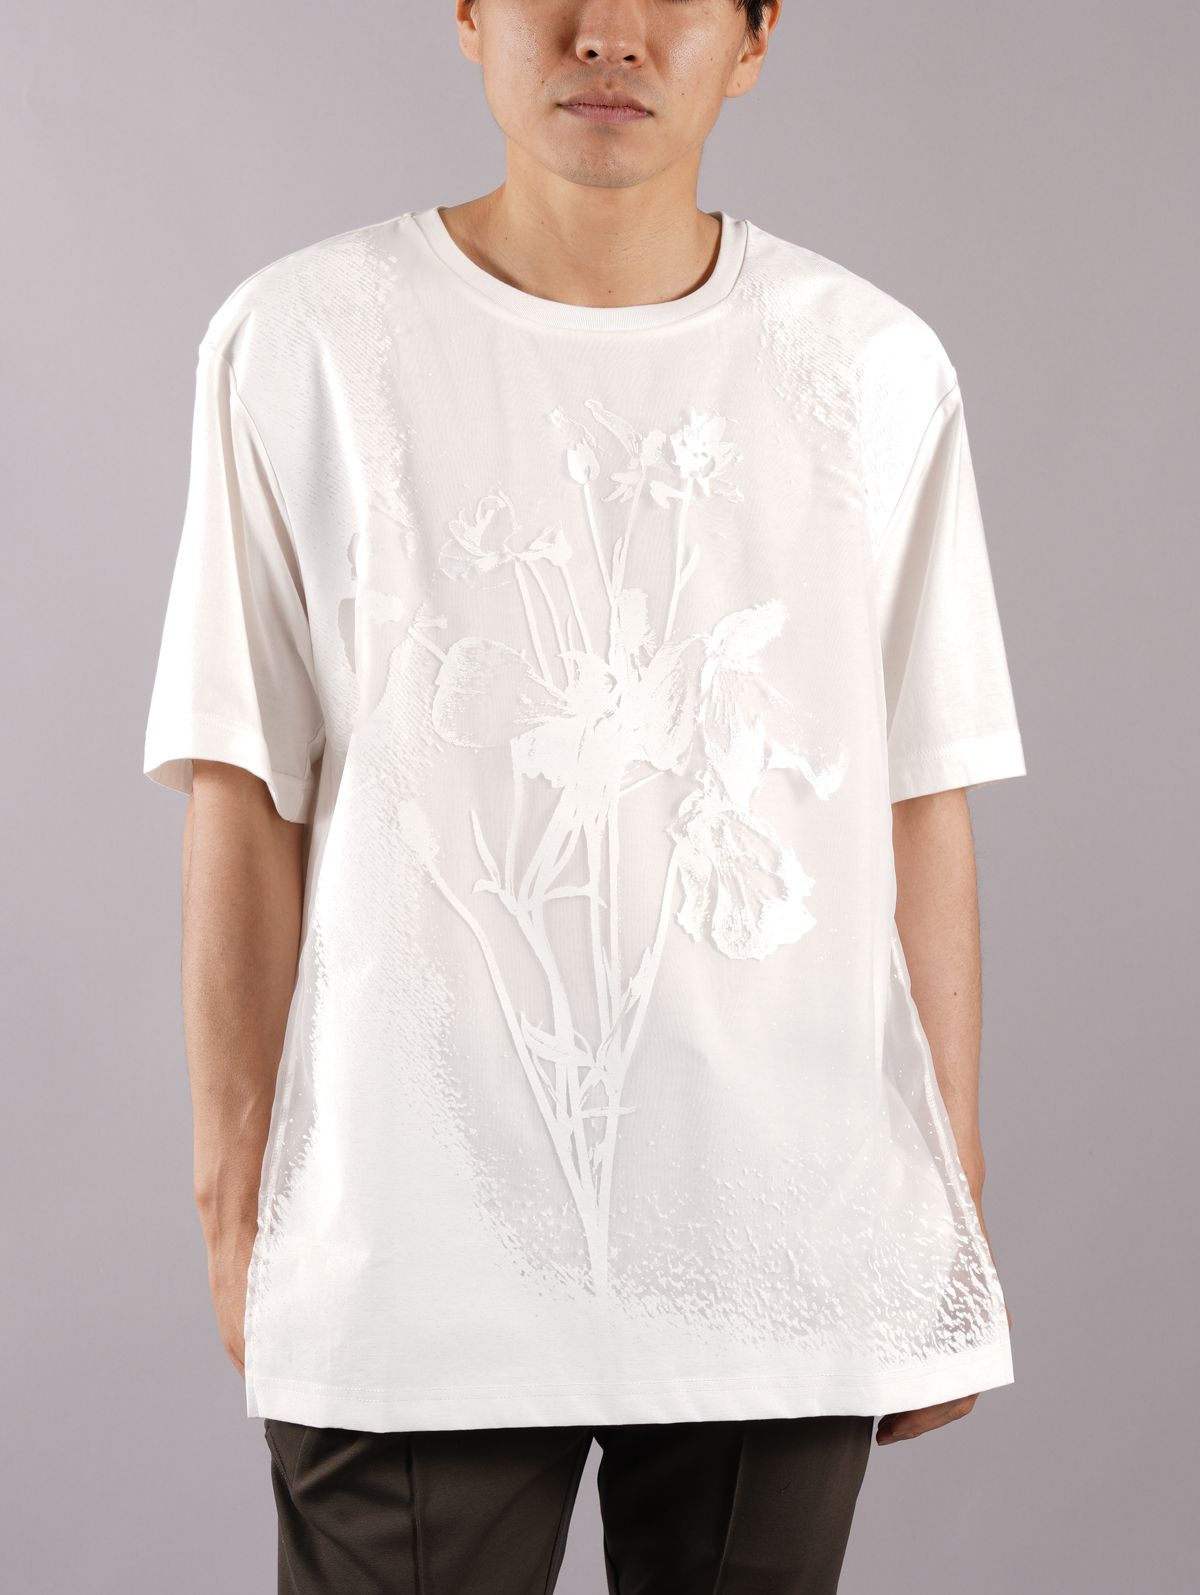 TAAKK - 【ラスト1点】LAYERED T-SHIRTS / レイヤード Tシャツ (半袖 